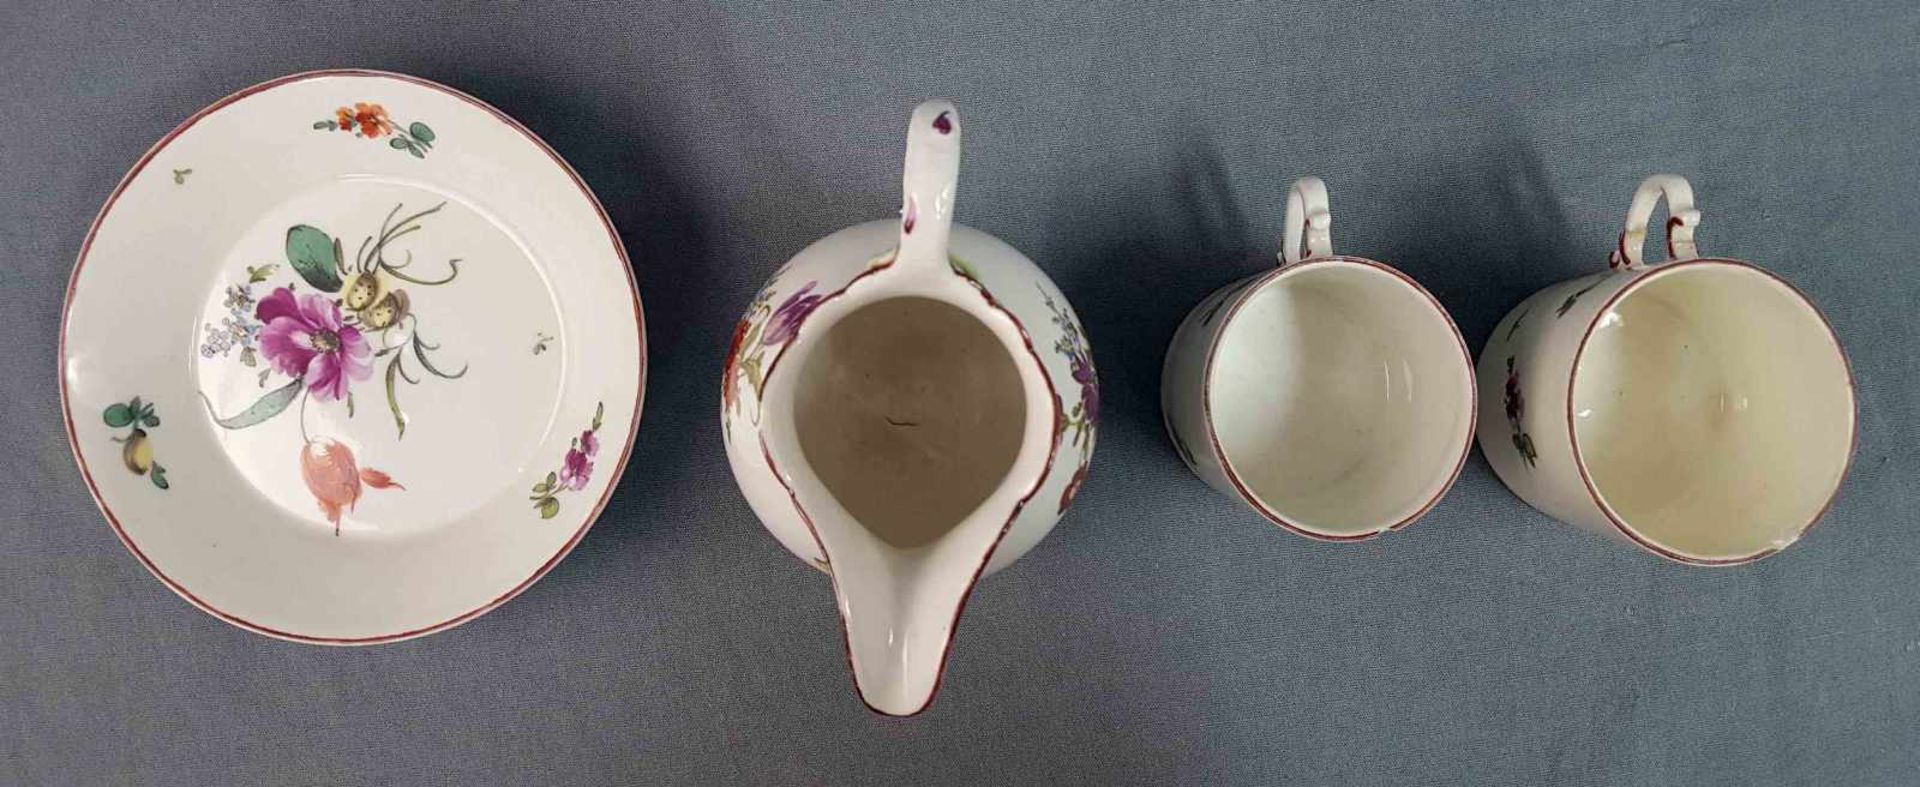 Ludwigsburg porcelain. 2 cups, saucer, milk jug. - Image 6 of 8